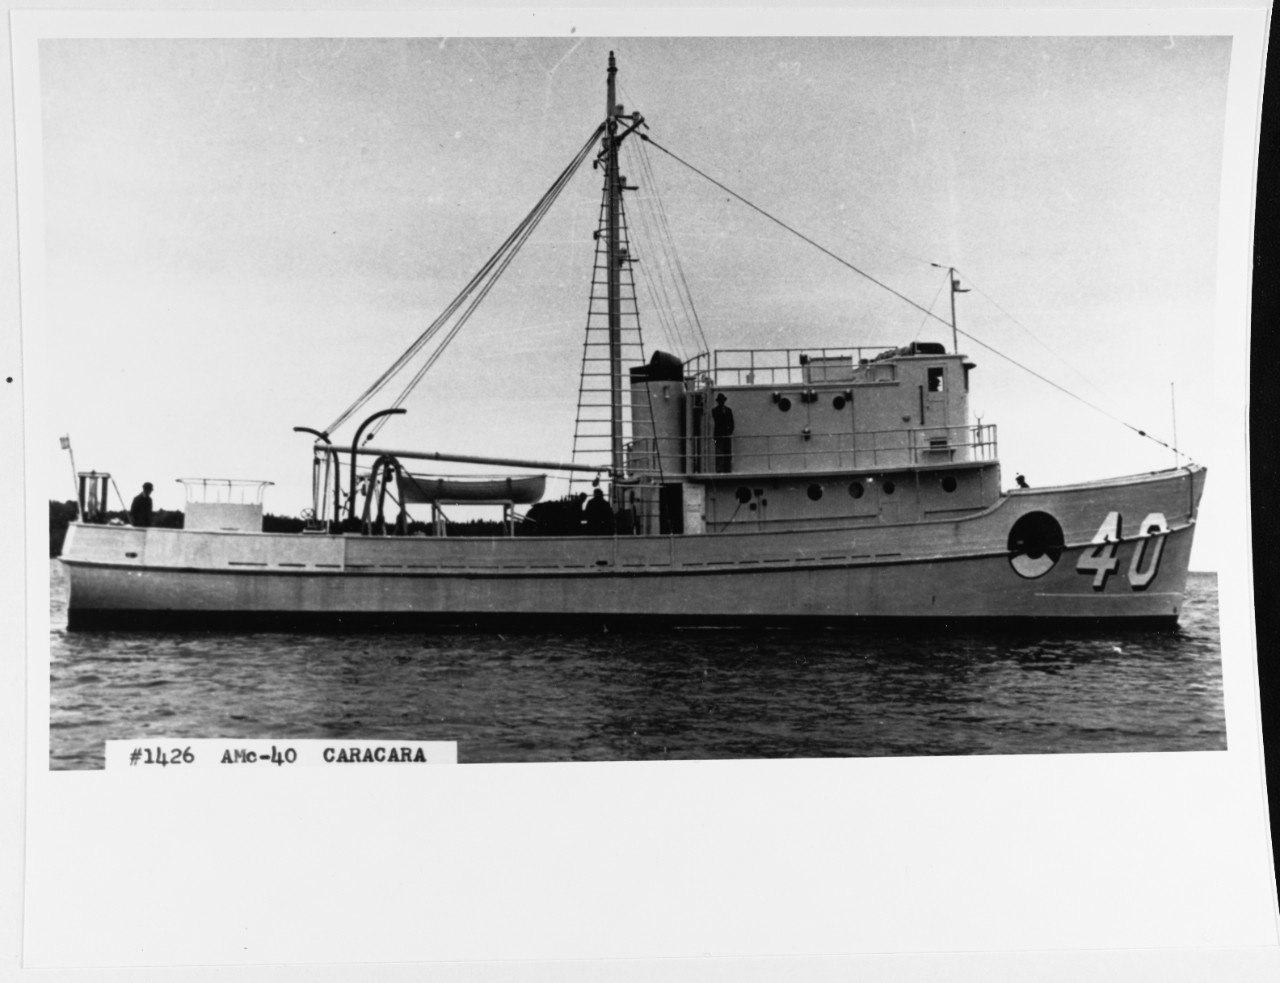 USS CARACARA (Am-40)